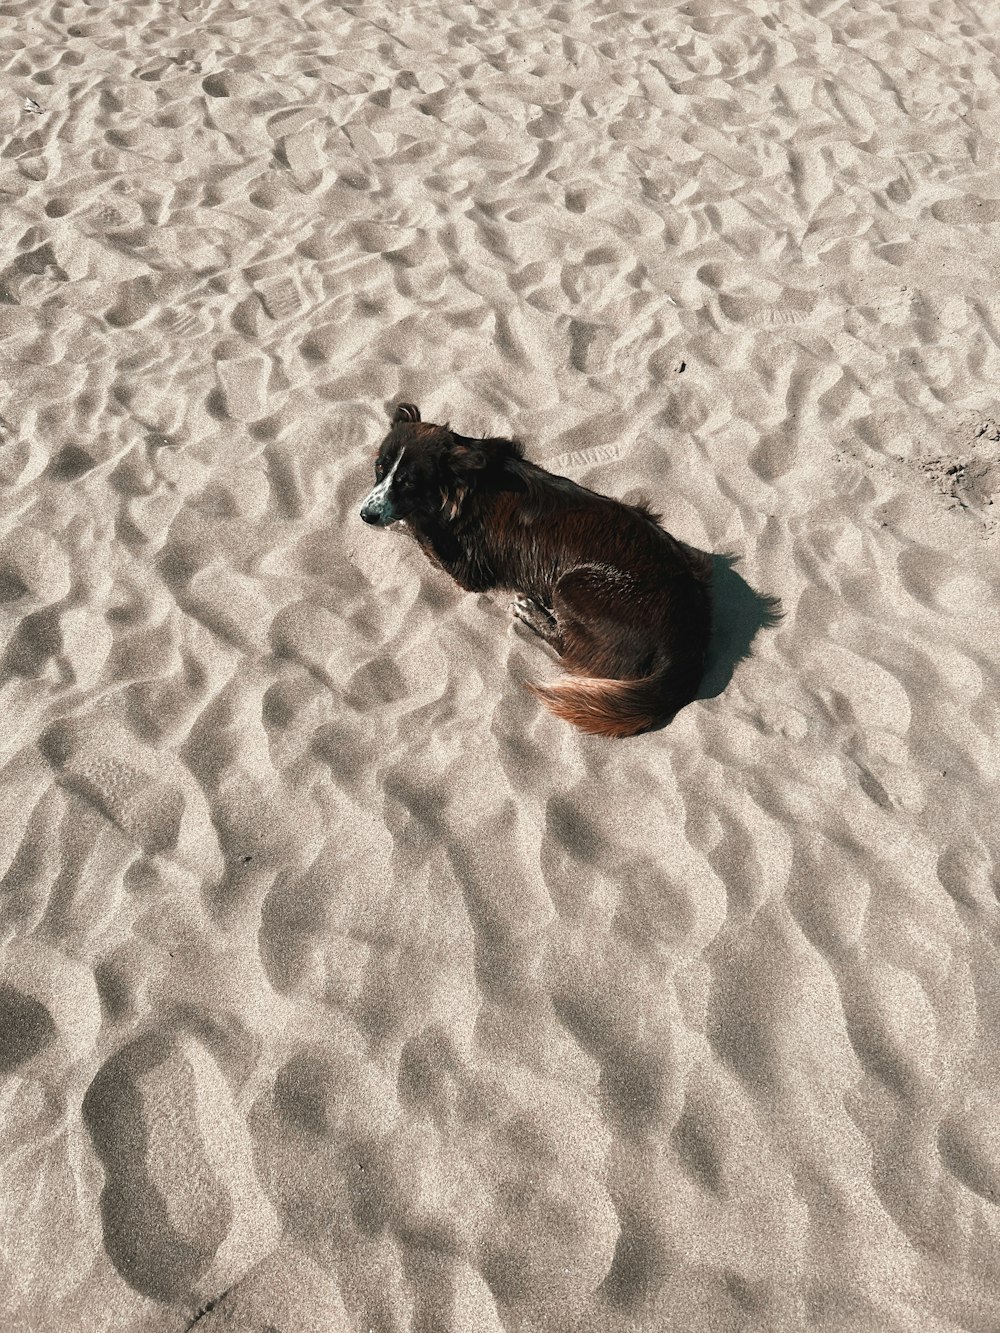 모래 위에 누워있는 개